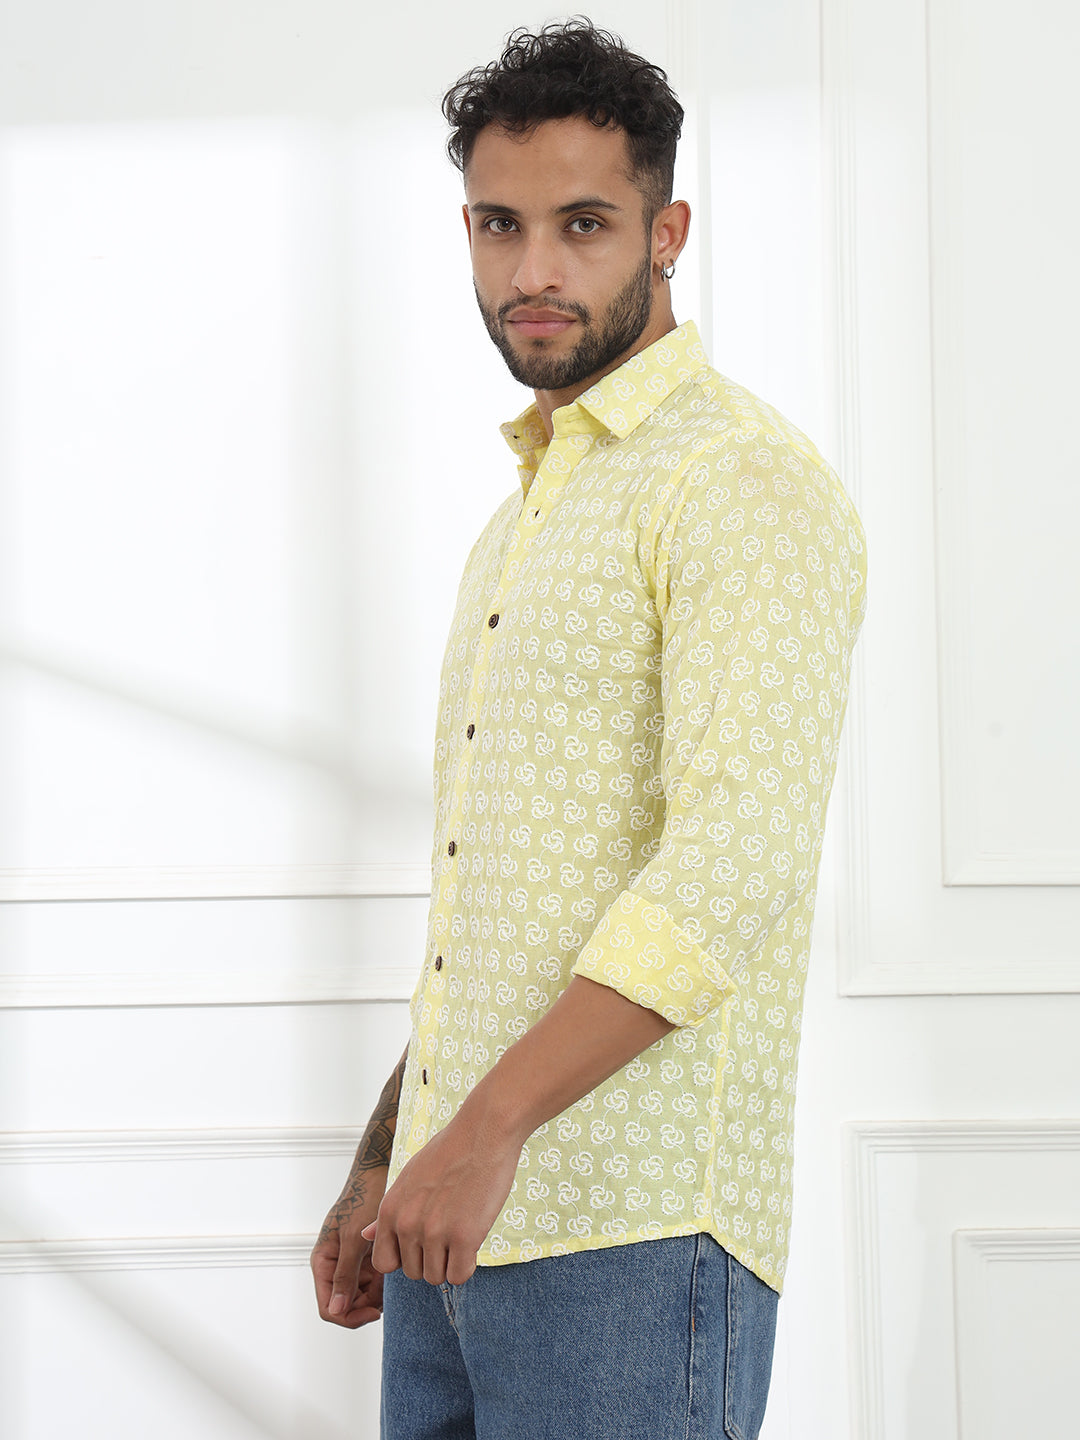 Laddoo Peela Yellow Firangi Yarn Super Soft Full Sleeves Chikankari schiffli Embroided Men's Shirt